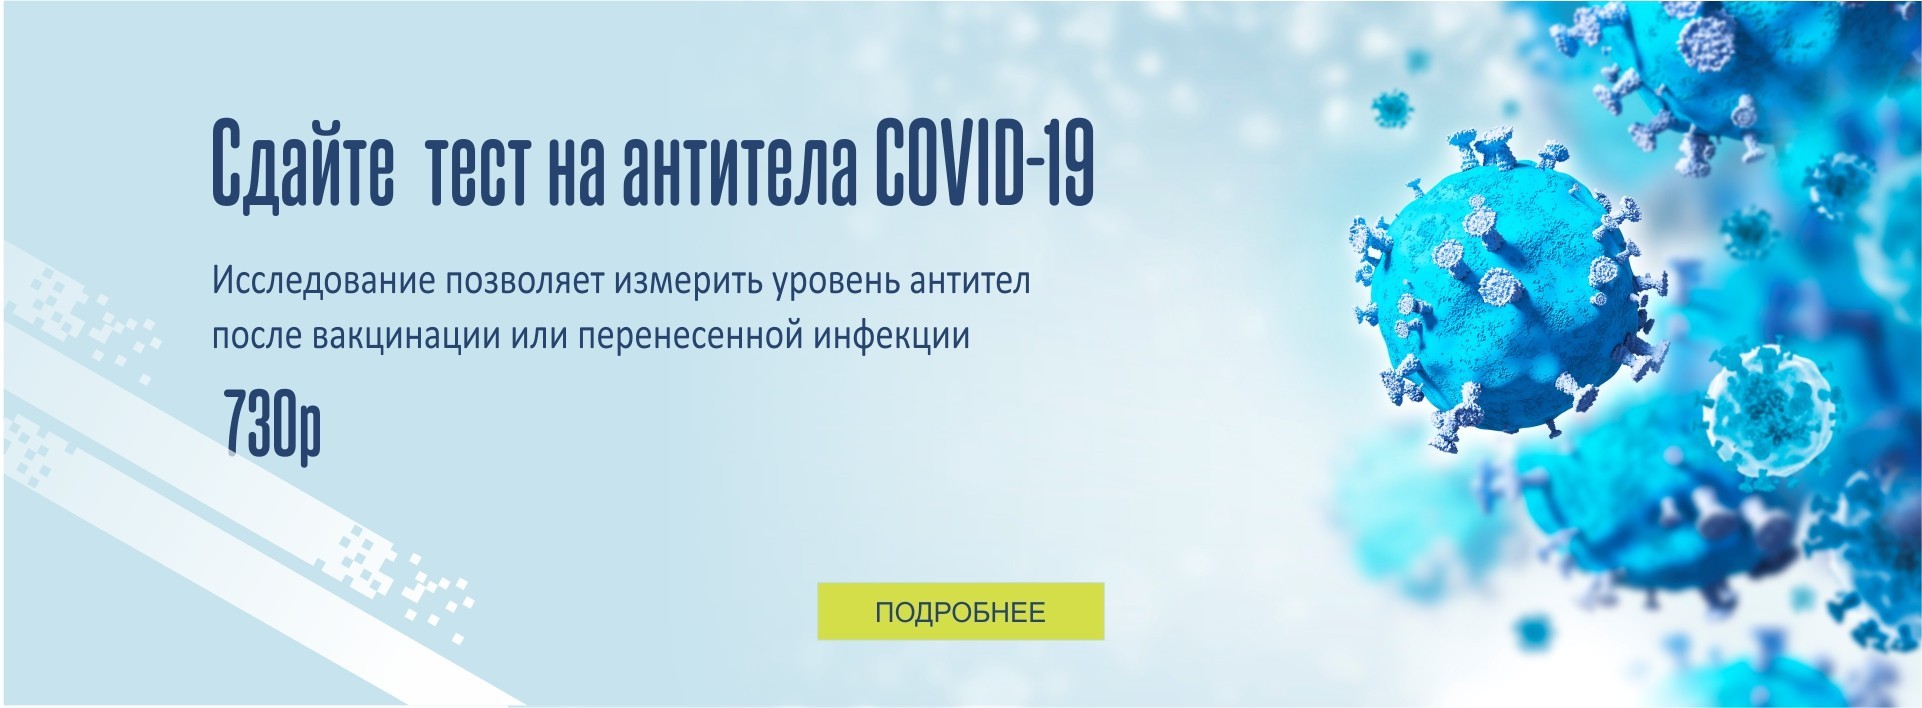 СДАЙТЕ ТЕСТ НА АНТИТЕЛА COVID-19